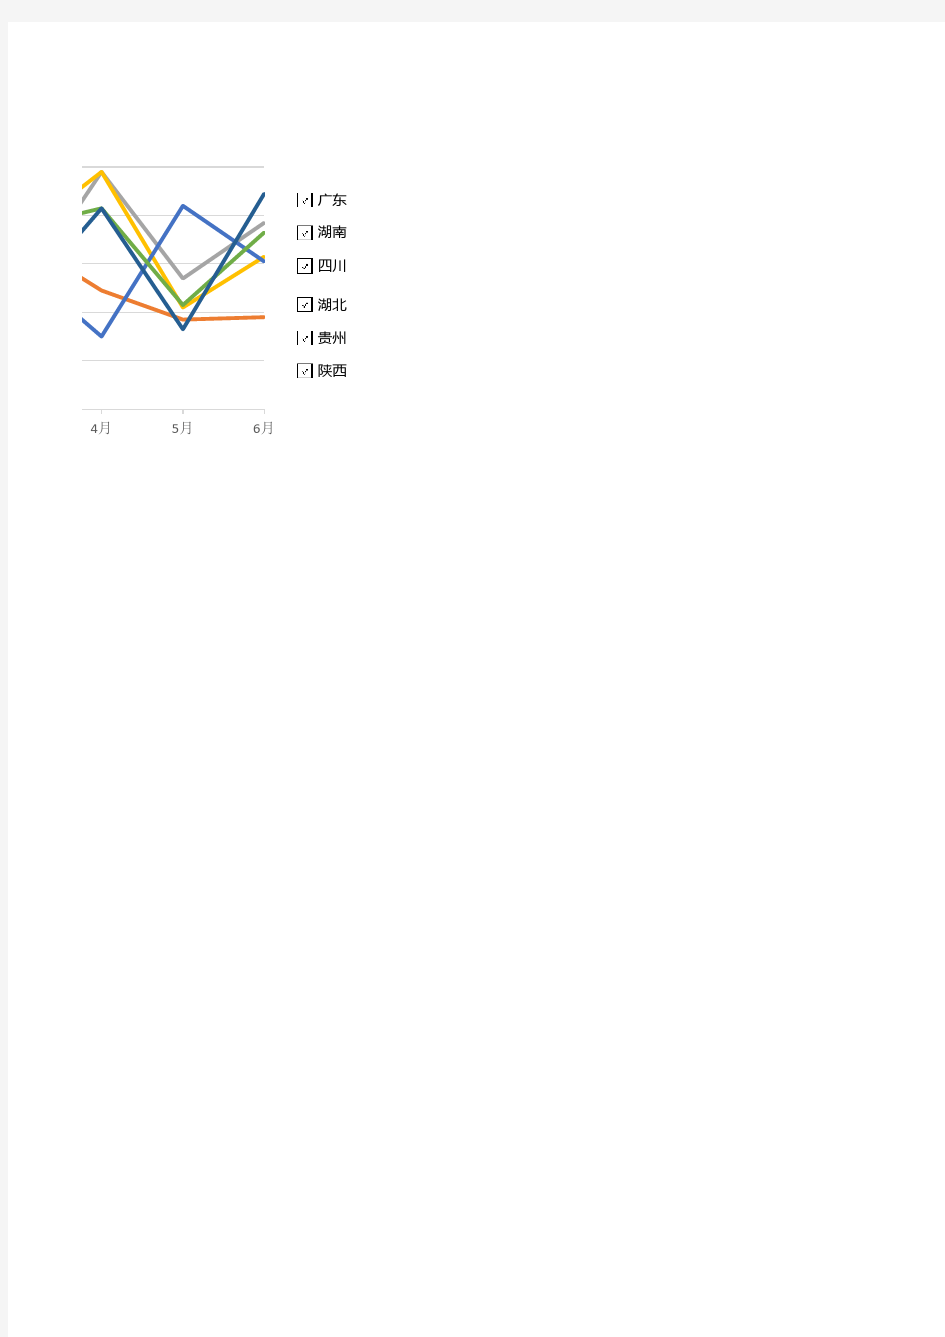 数据分析通用折线图Excel模板